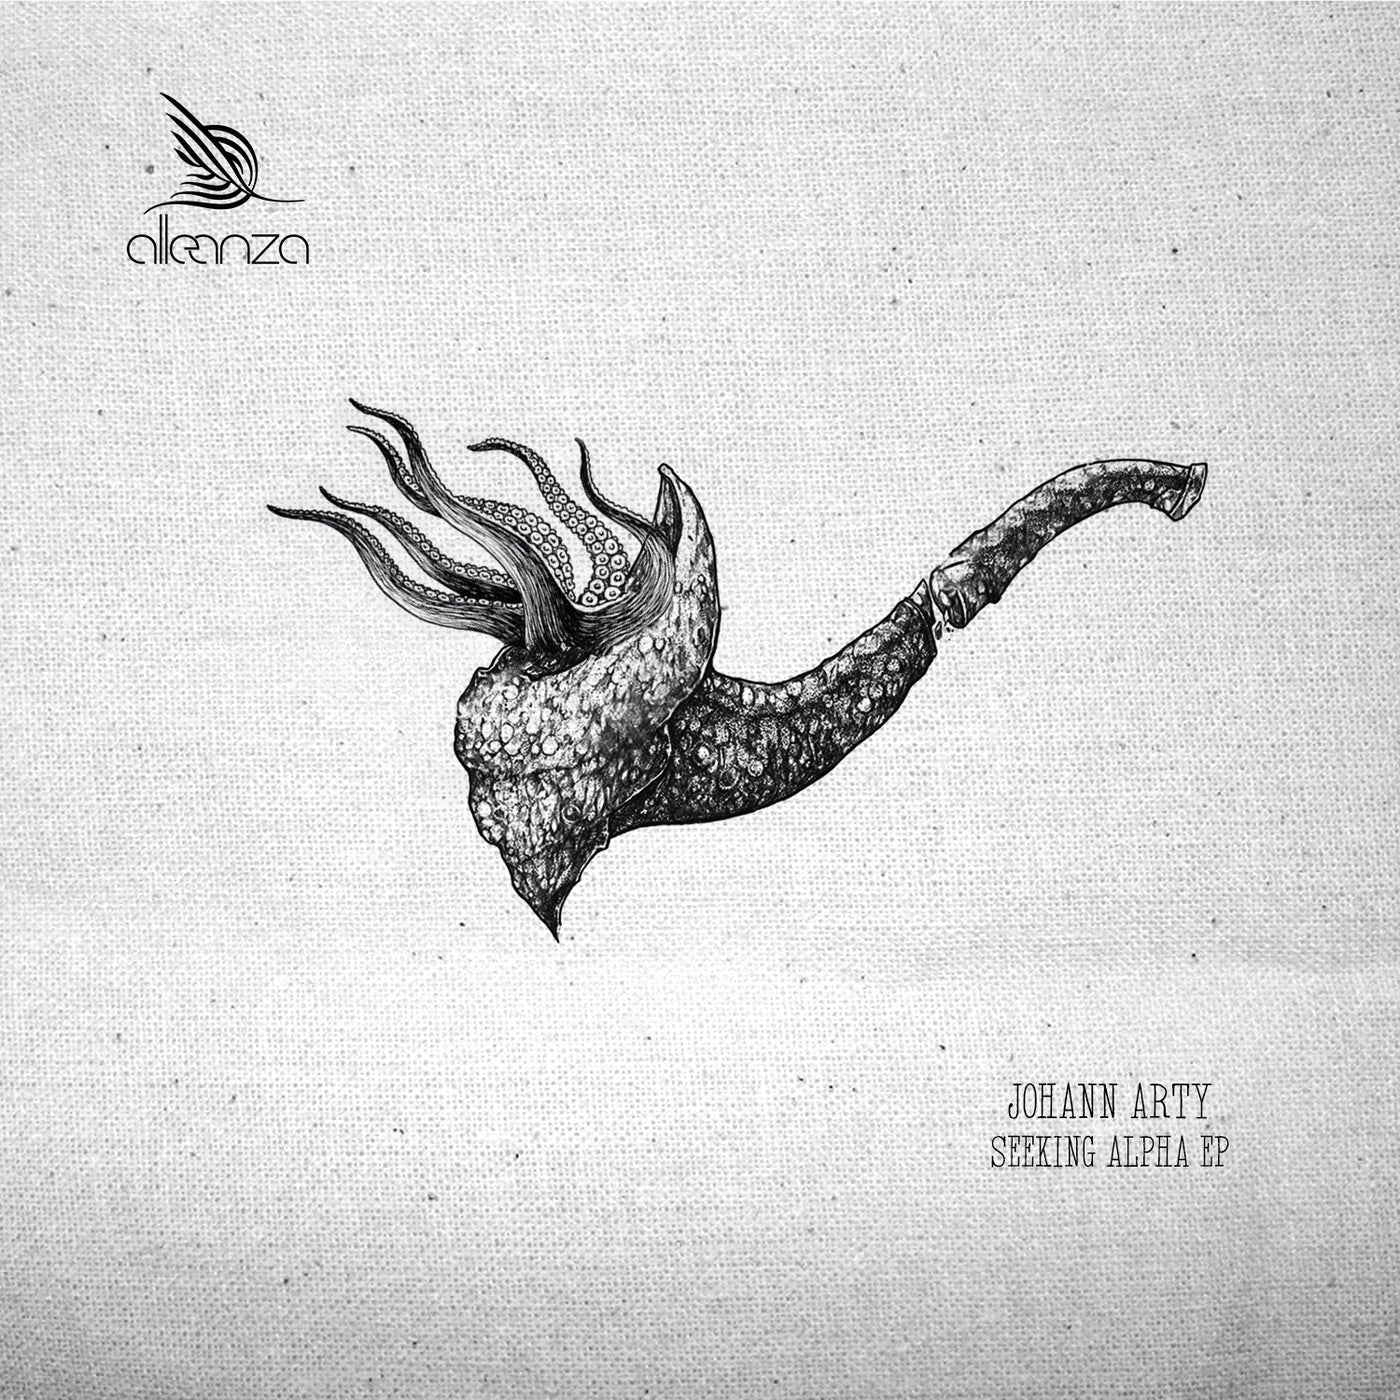 Johann Arty – Seeking Alpha EP [ALLE158]